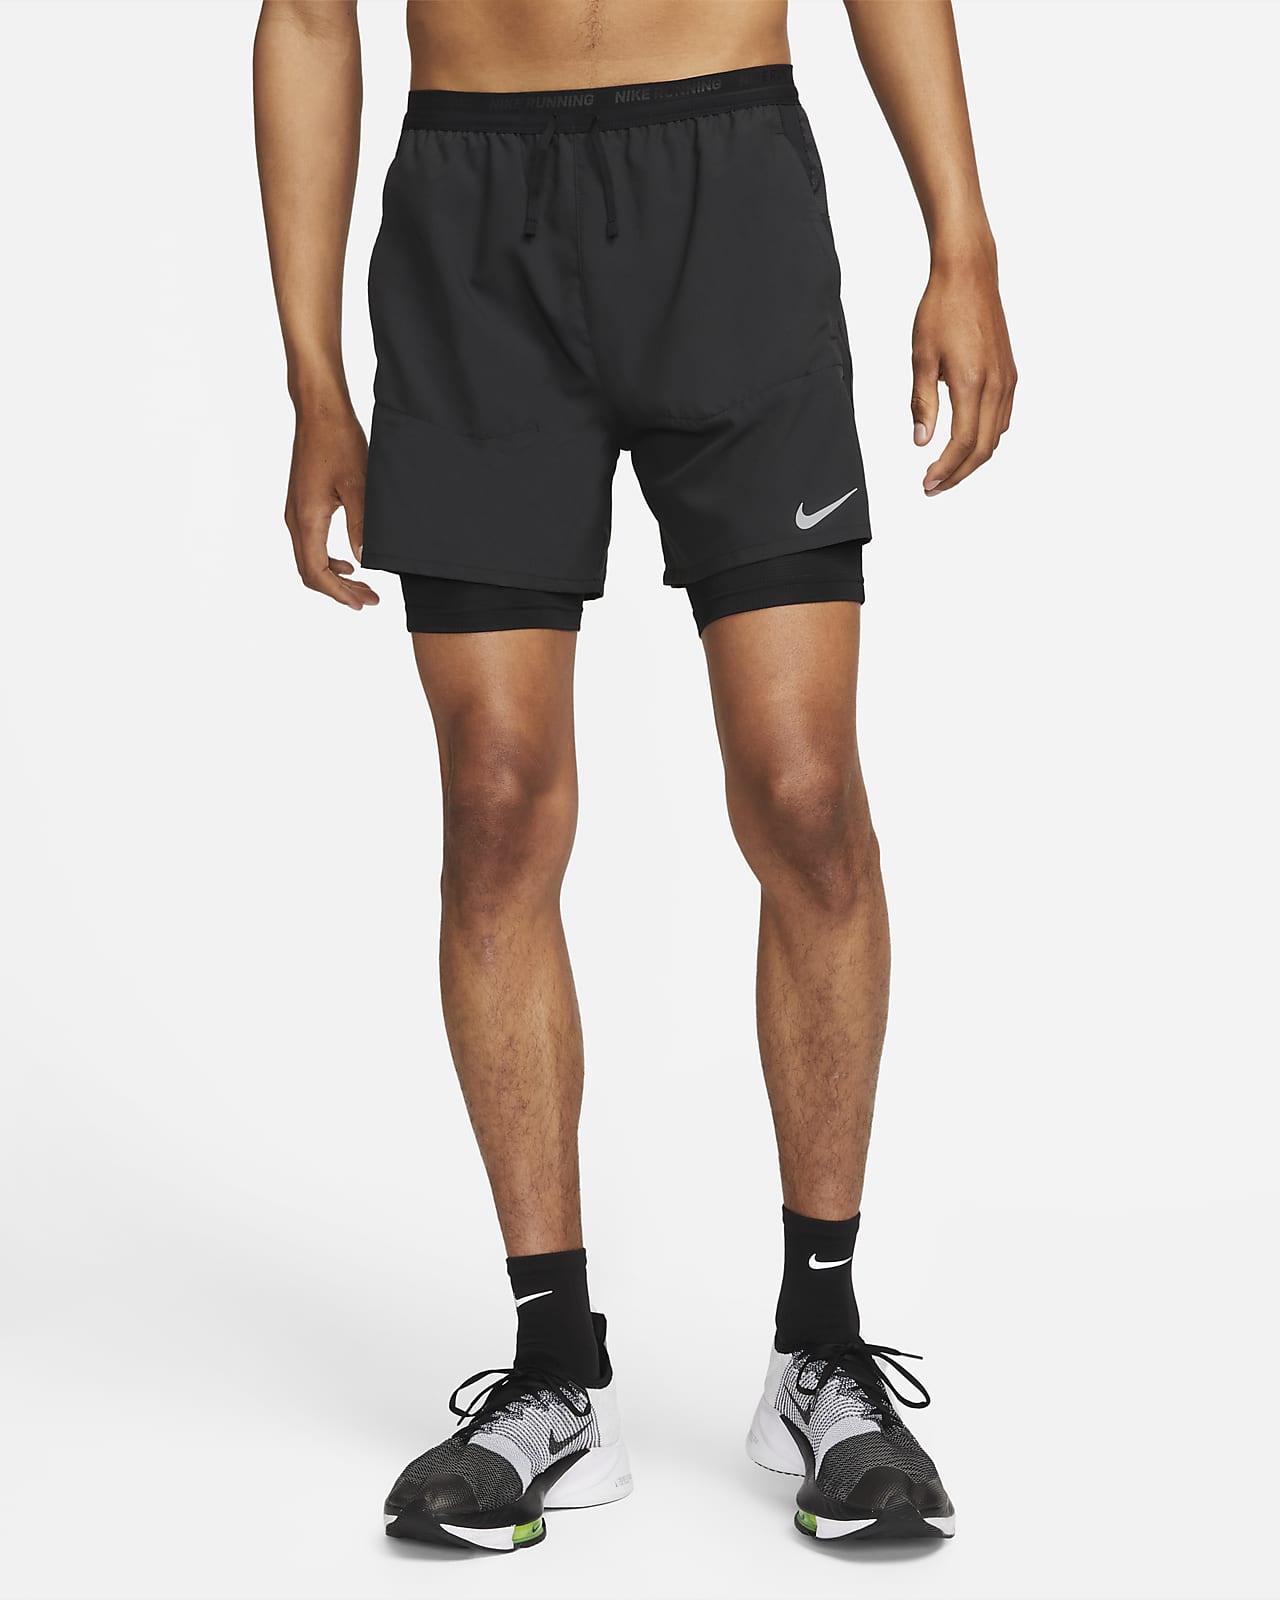 Brood kraam Wiskunde Nike Dri-FIT Stride 2-in-1 hardloopshorts voor heren (18 cm). Nike BE